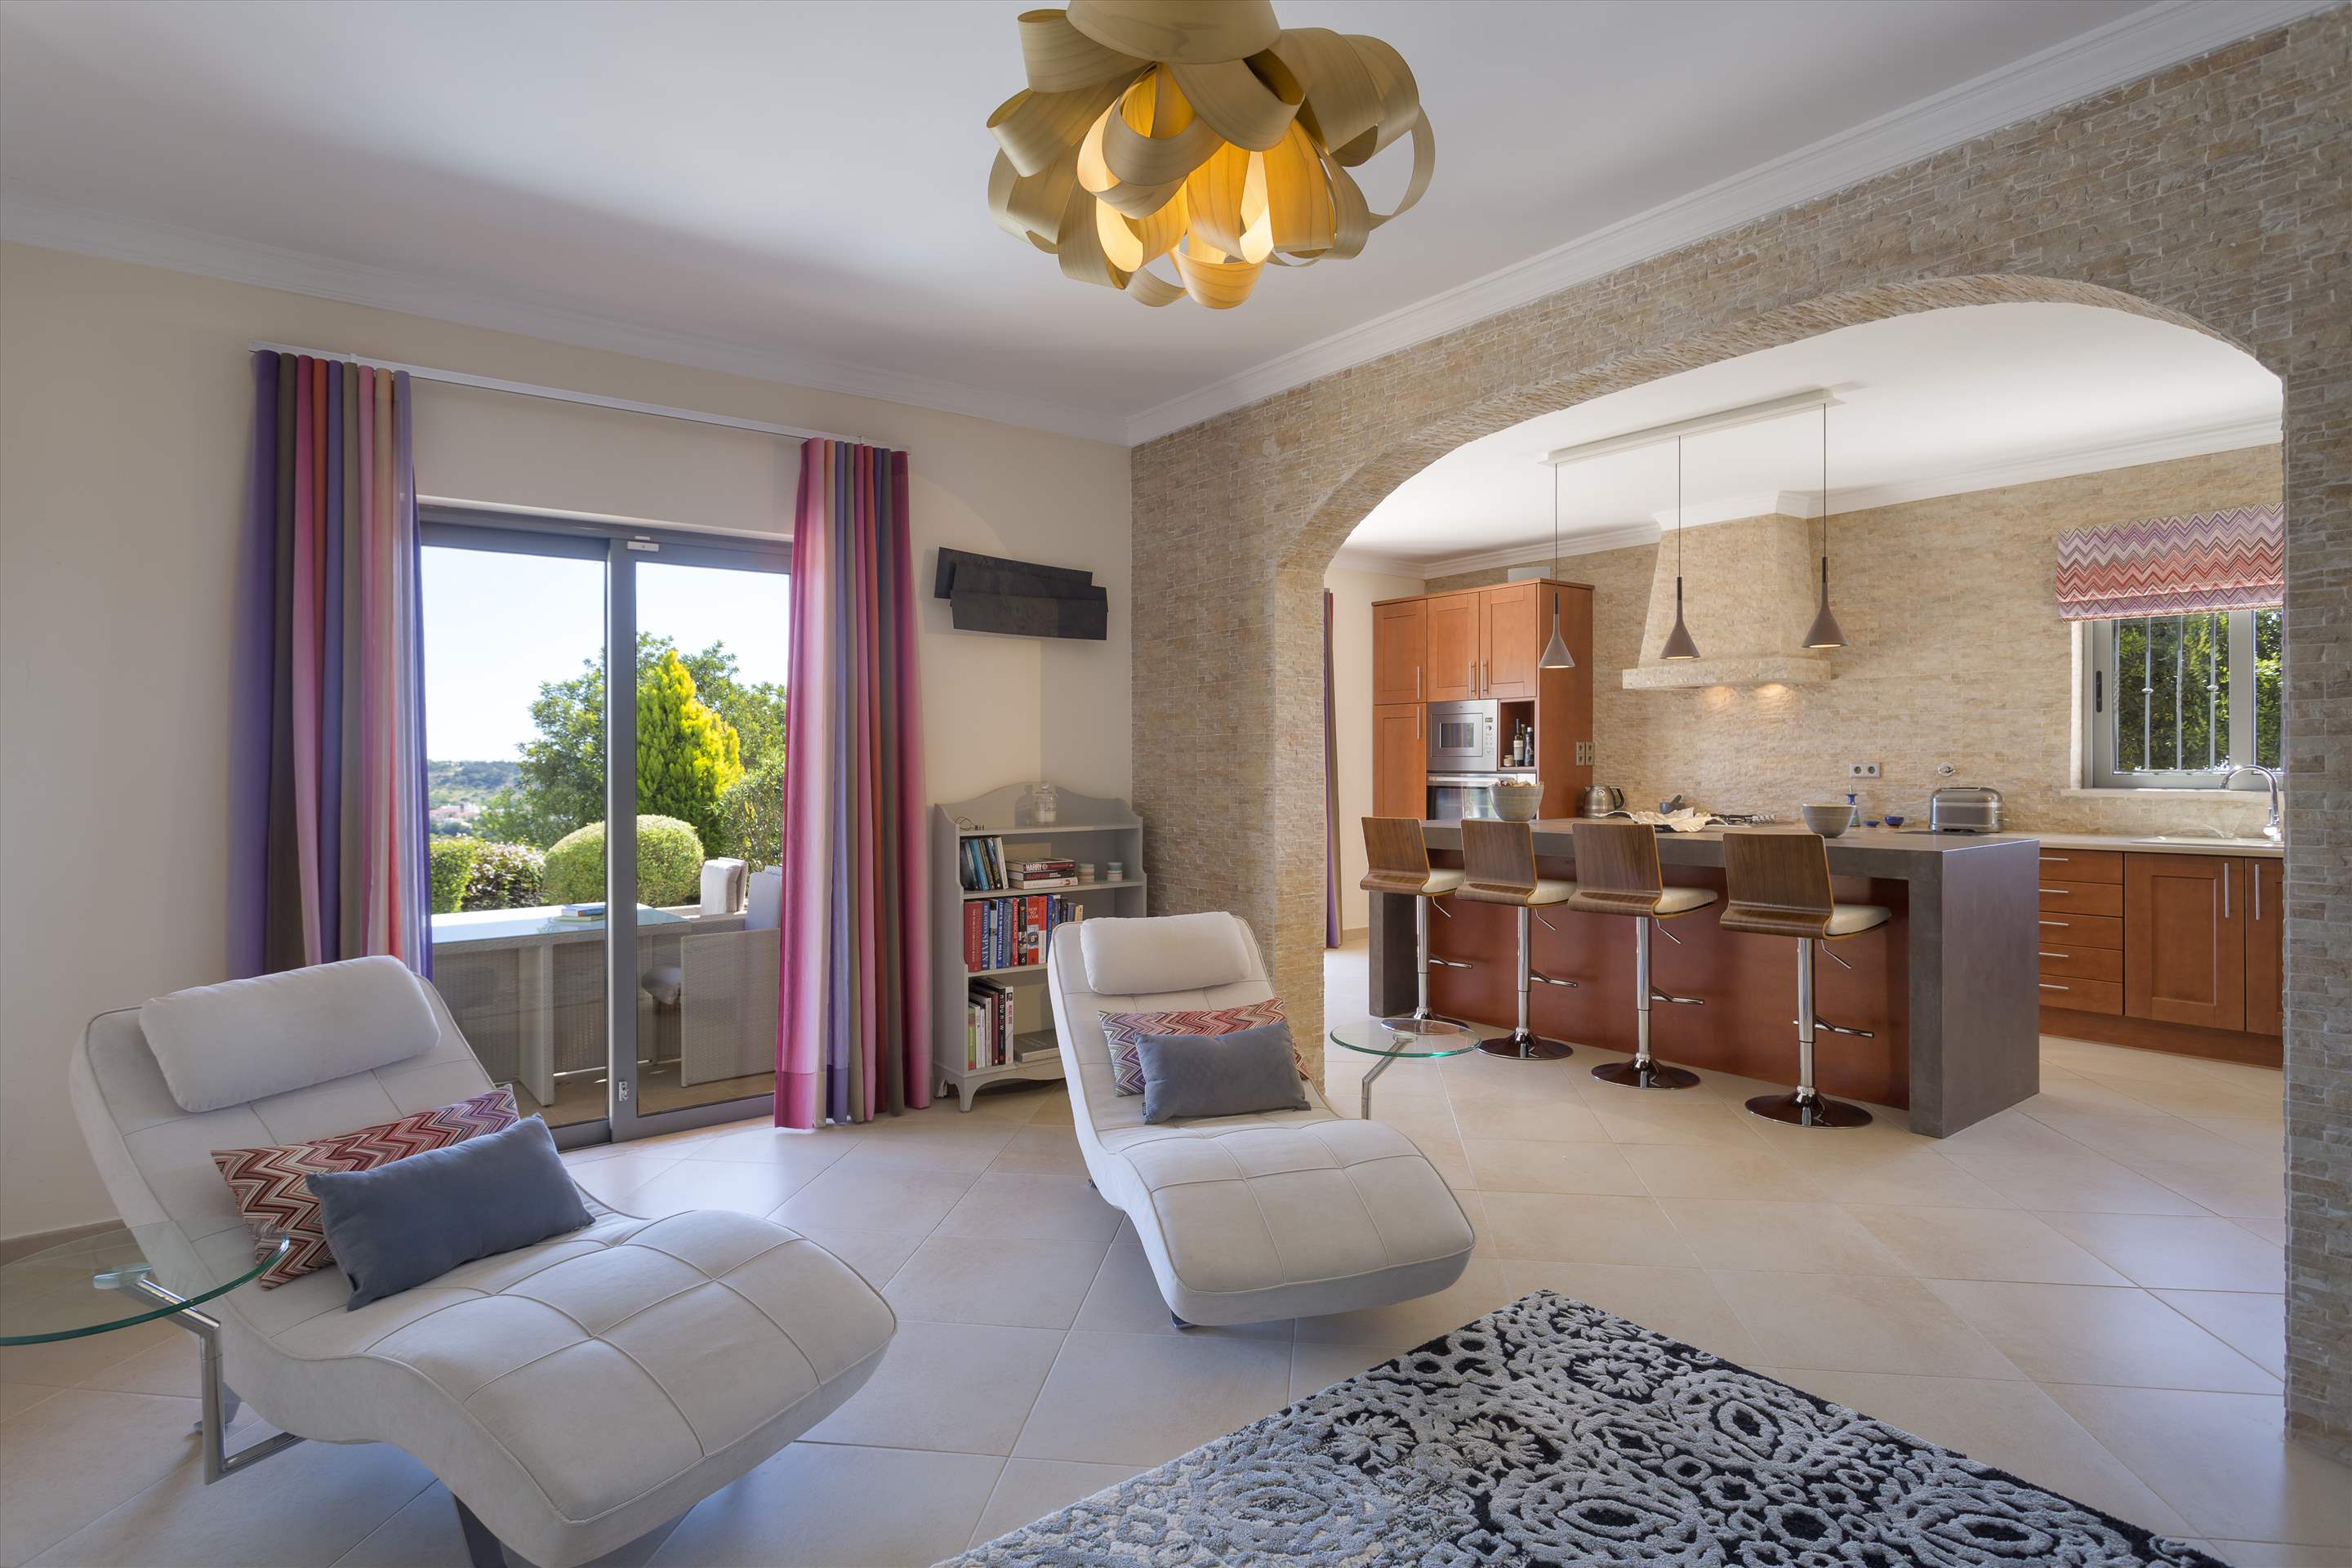 Casa da Pena Branca, Three bedroom, 6 Persons Occupancy, 3 bedroom villa in Algarve Countryside, Algarve Photo #7